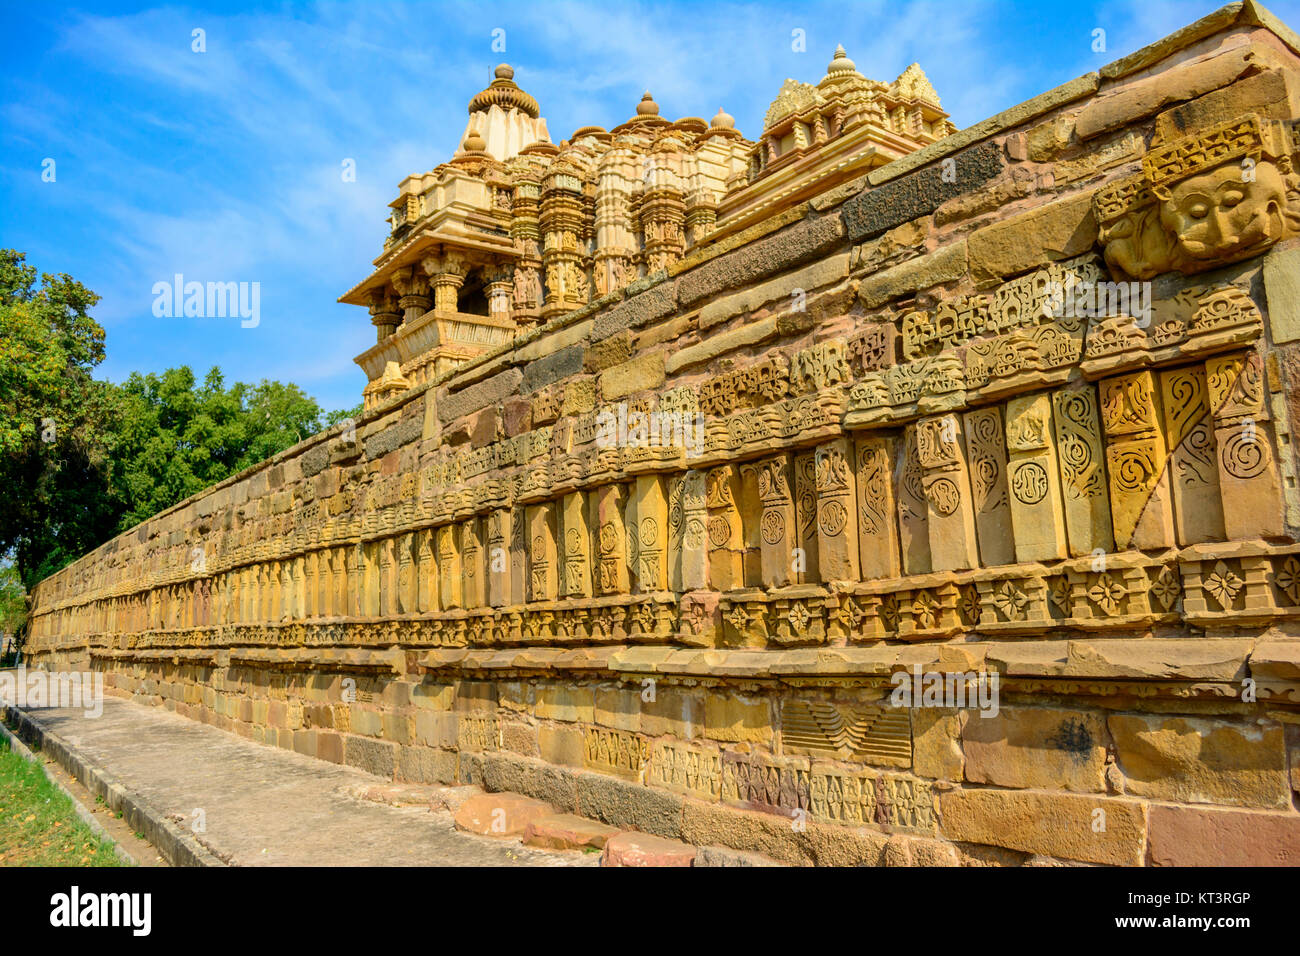 In der Nähe der Seitenwand Chitragupta Hindu Tempel gegen den blauen Himmel - Khajuraho Madhya Pradesh, Indien Stockfoto